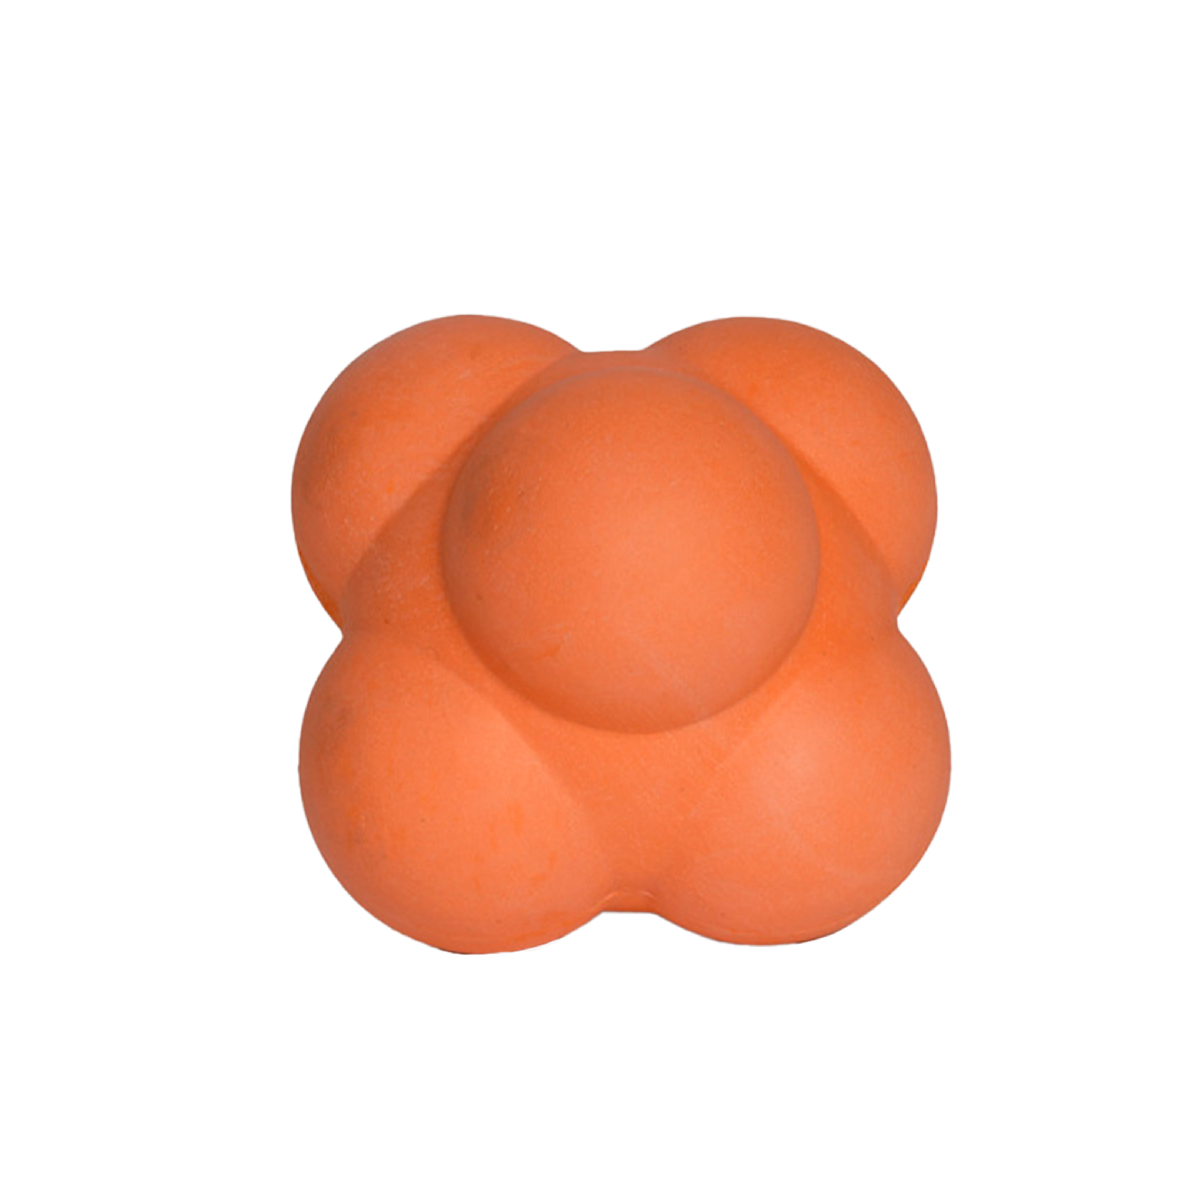 Мяч Reaction ball резиновый оранж d=9 cm